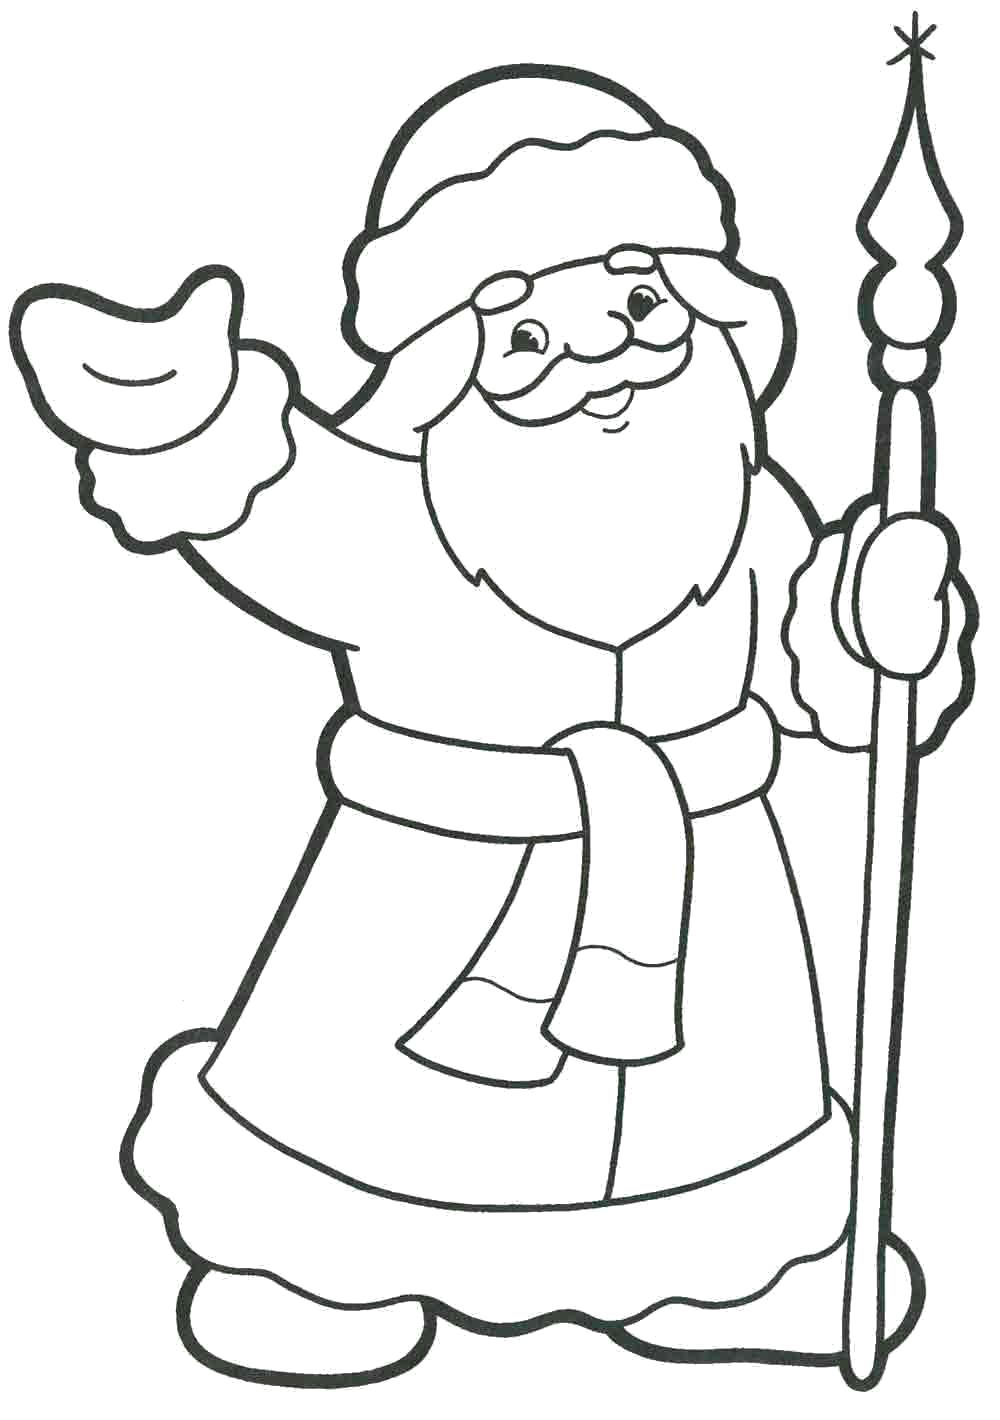 Название: Раскраска Дед мороз с посохом. Категория: Новый год. Теги: Дед мороз.